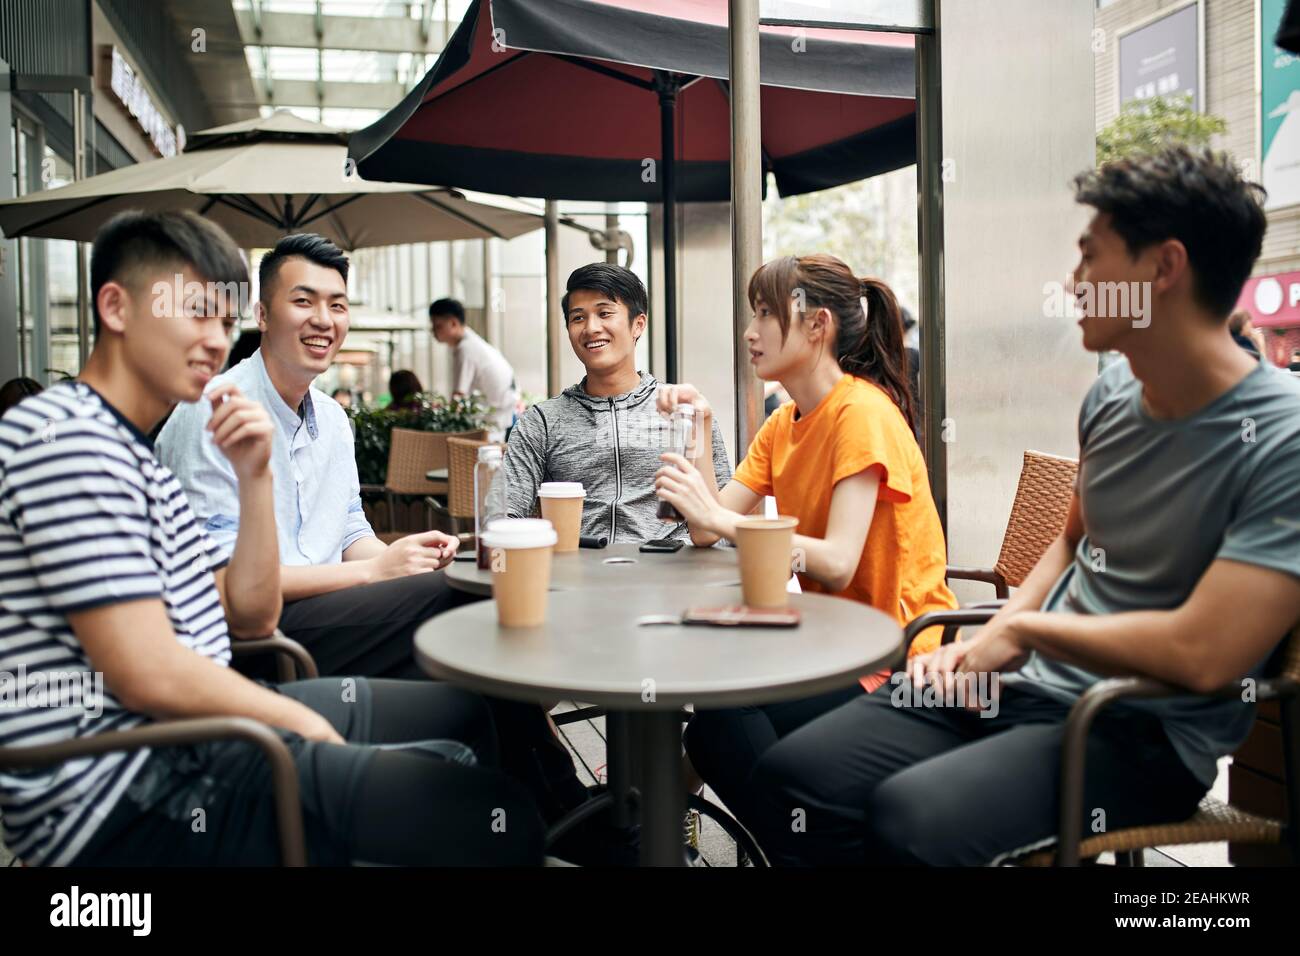 jeunes adultes asiatiques, hommes et femmes, bavardant en se détendant café-restaurant extérieur Banque D'Images